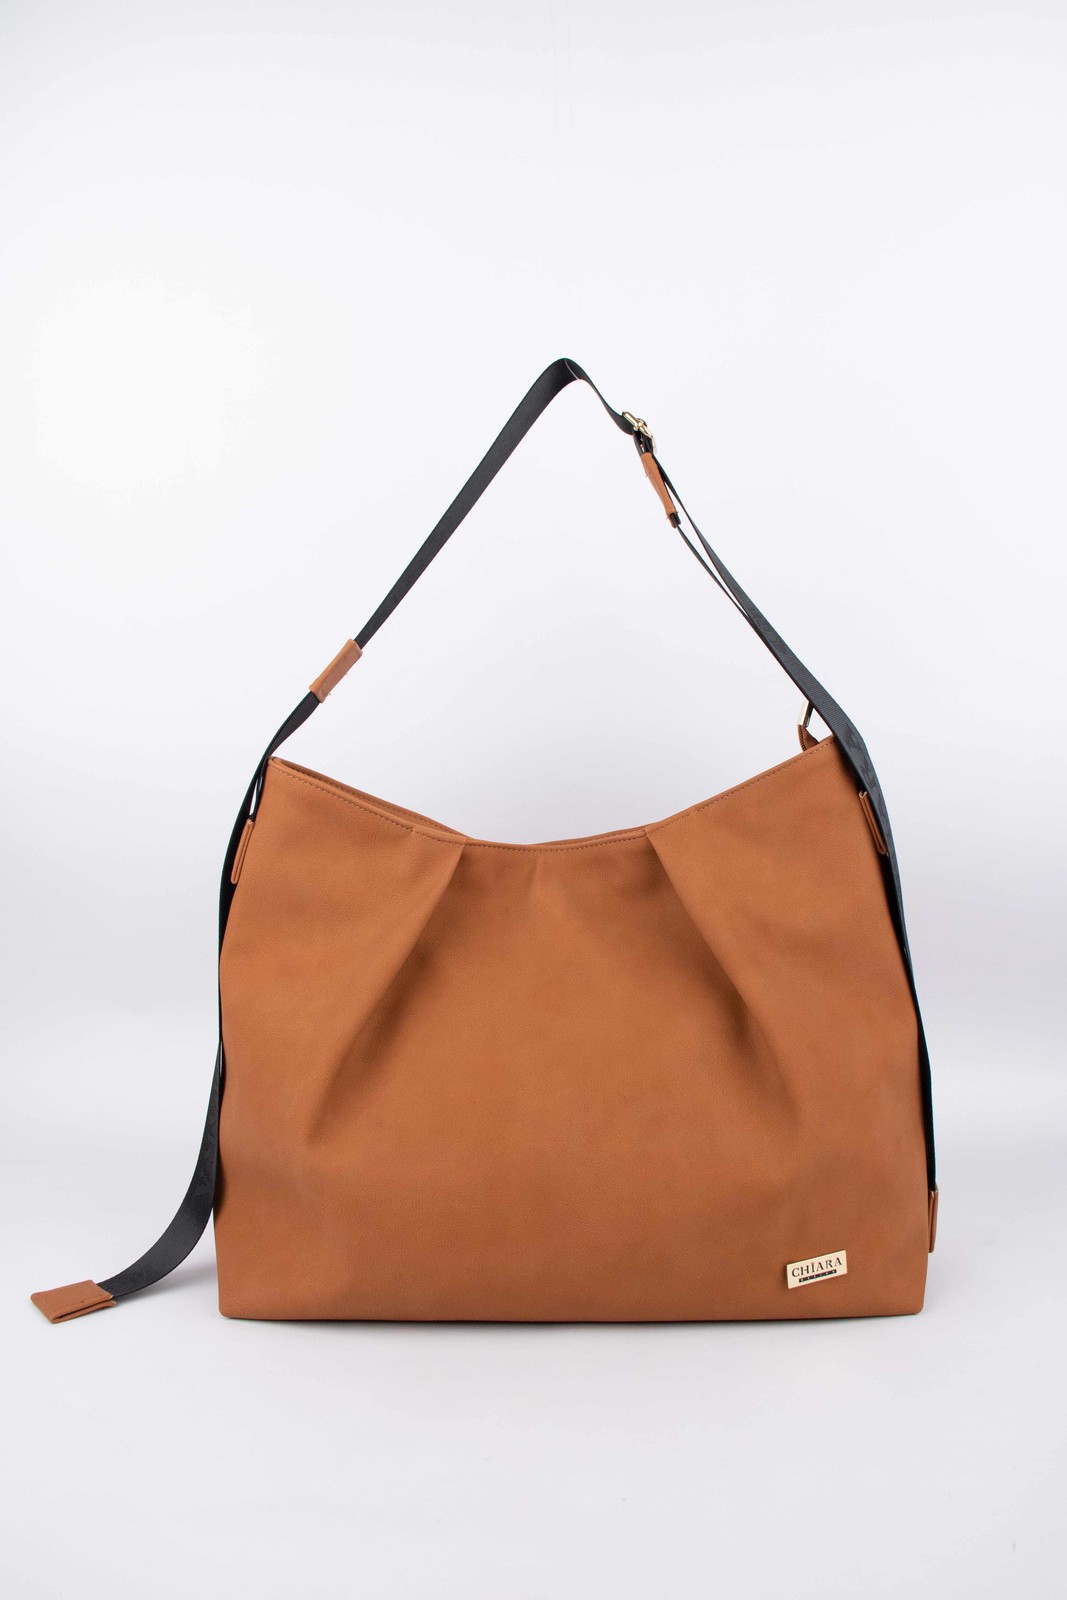 Chiara Woman's Bag K782